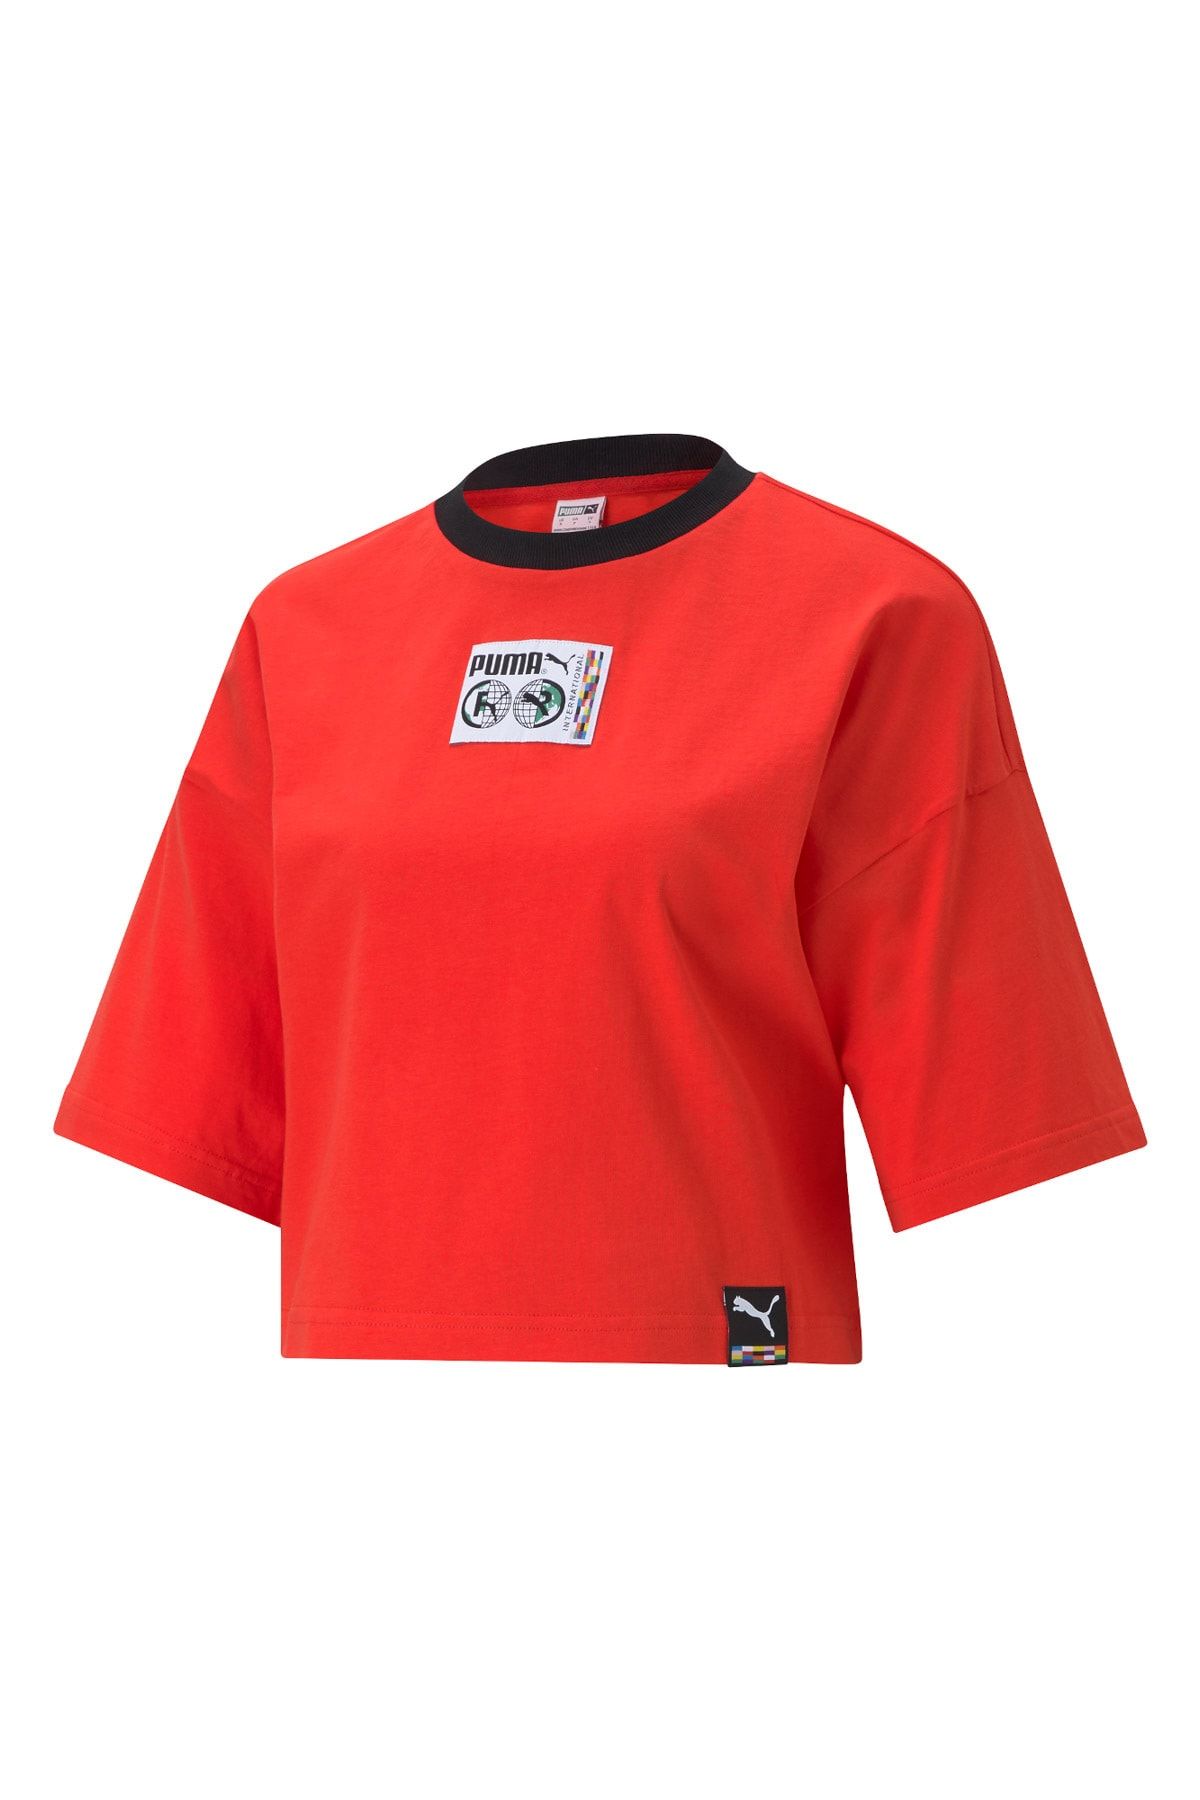 Puma Kadın Spor T-Shirt - PI Graphic - 59970223